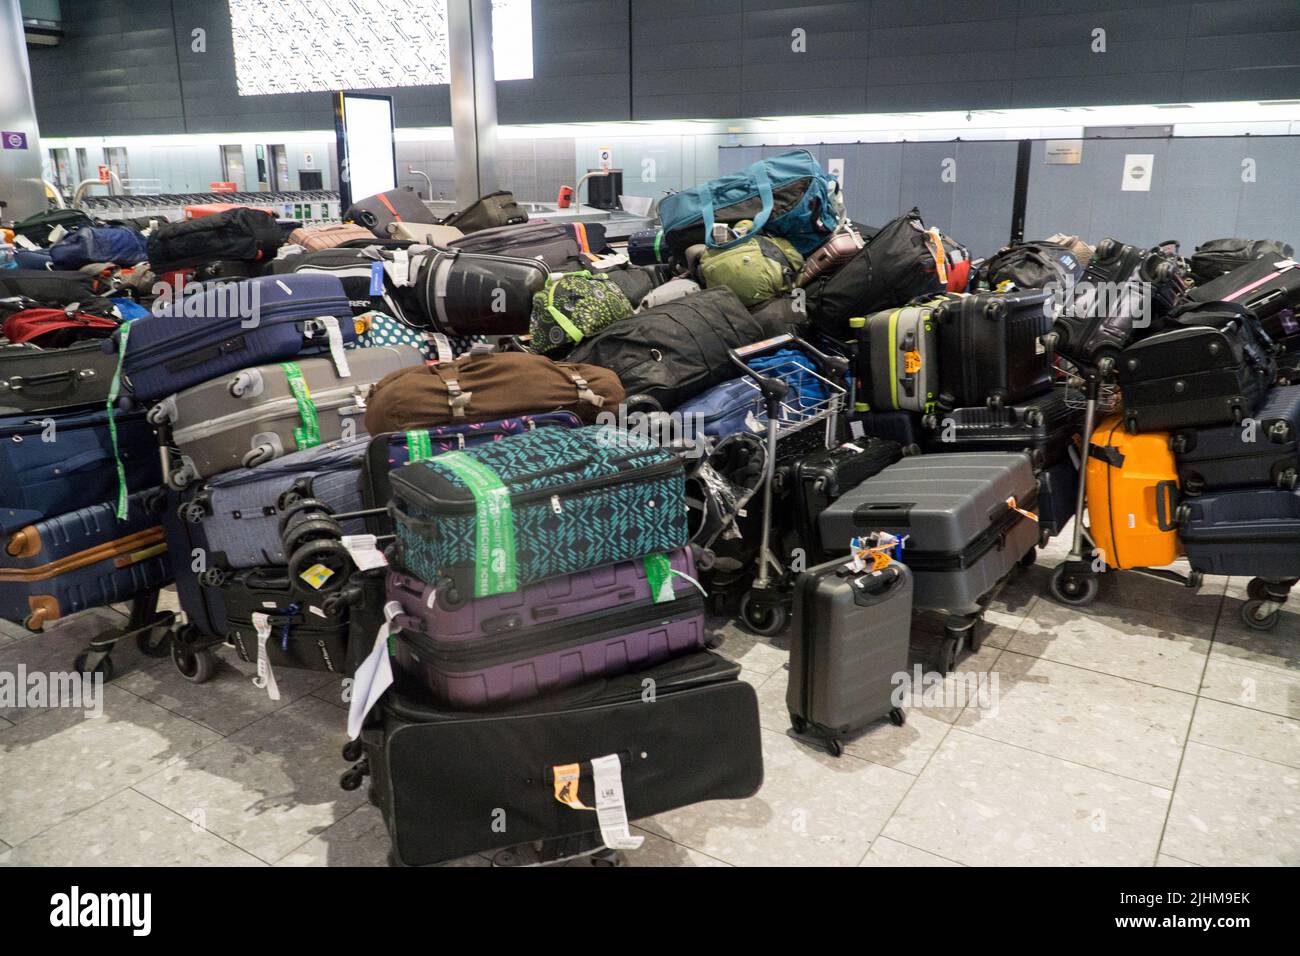 Heathrow, Reino Unido, 17 de julio de 2022: Un gran número de maletas facturadas separadas de sus propietarios en la Terminal 5 del aeropuerto de Heathrow. Noticias vivas de Anna Watson/Alamy Foto de stock